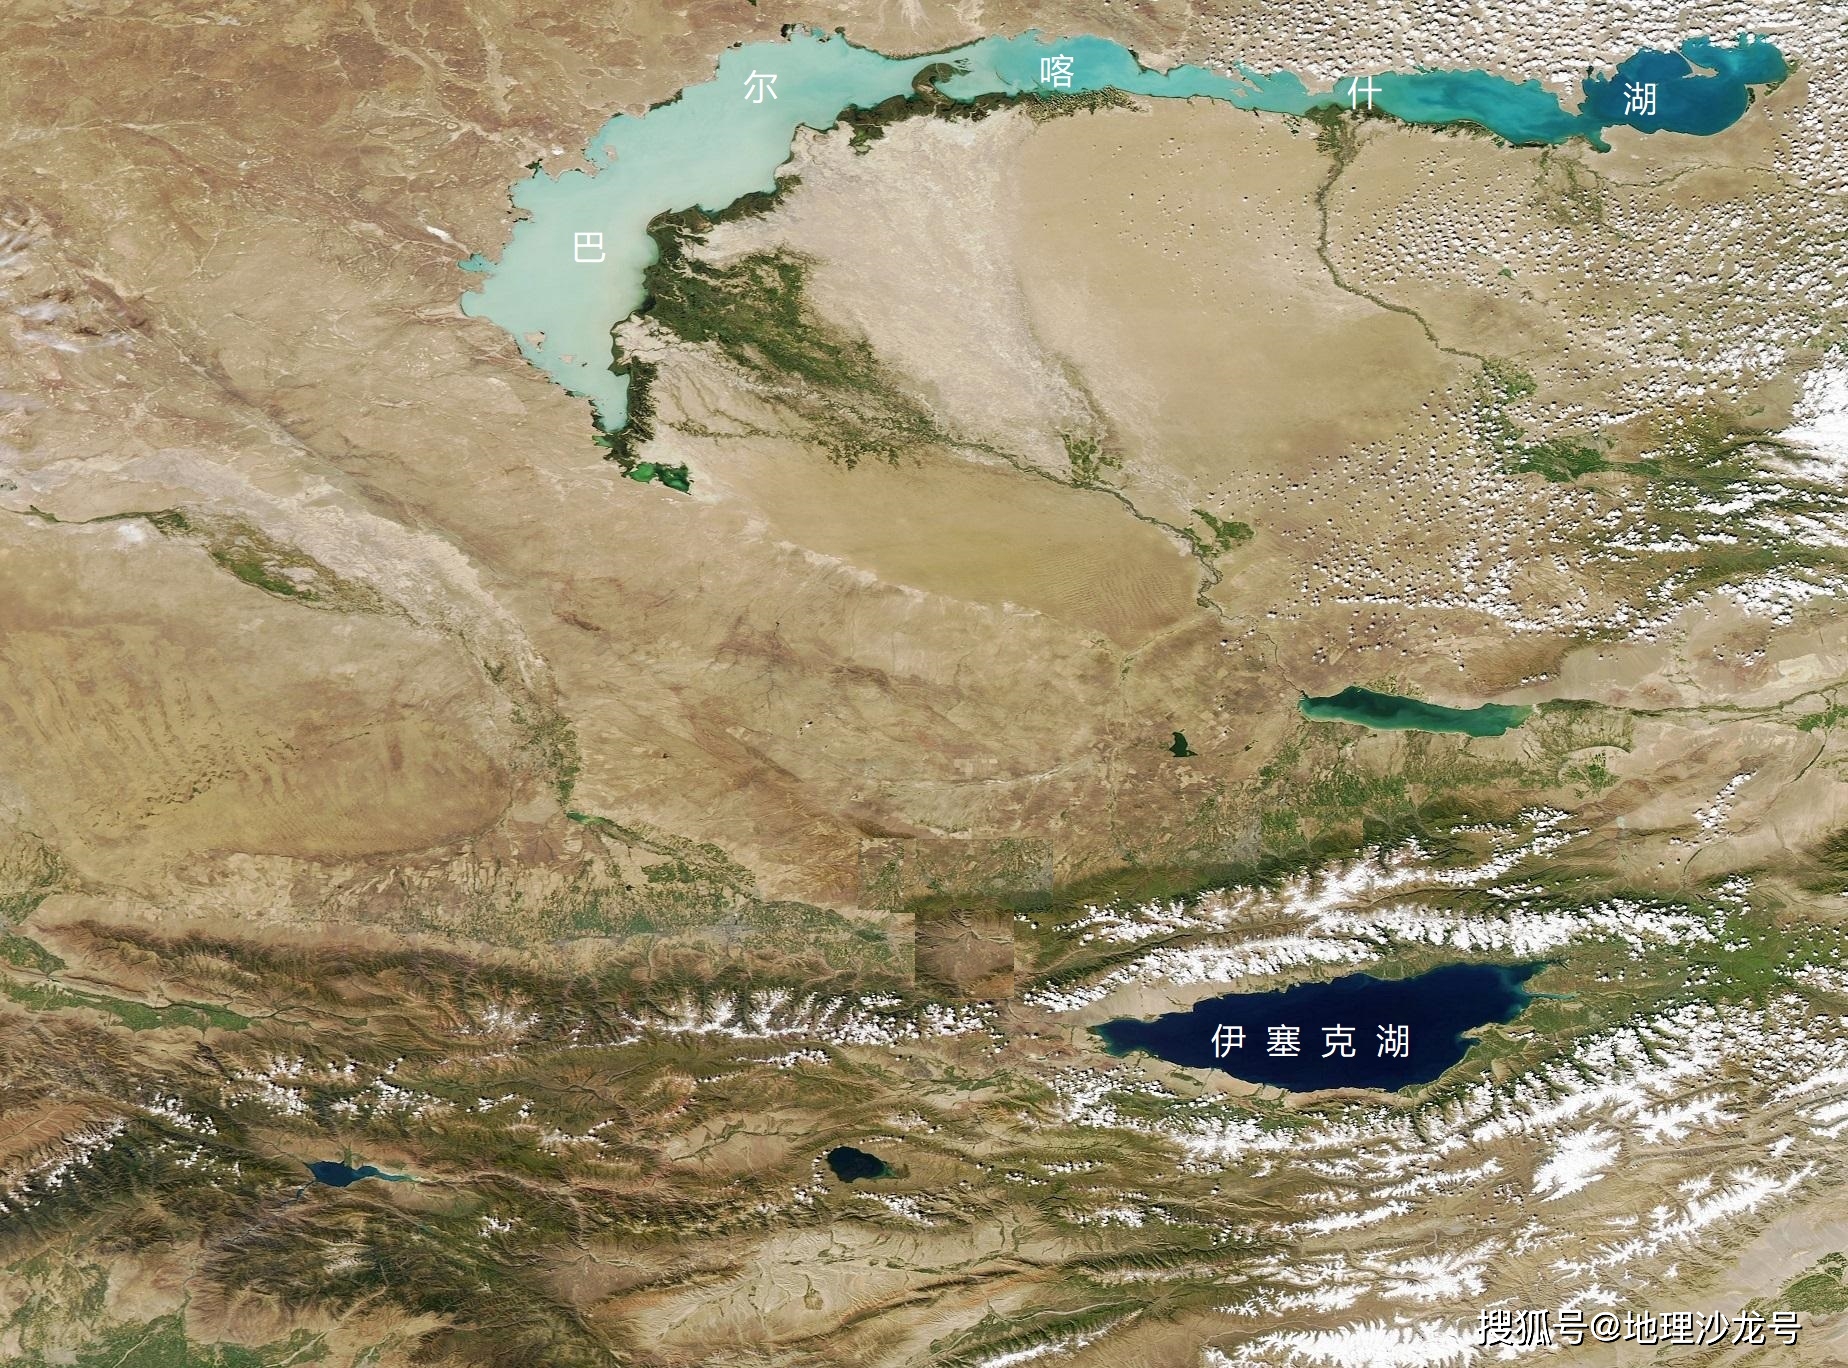 天山山脉北麓的伊塞克湖,有中亚明珠之称,湖水终年不结冰